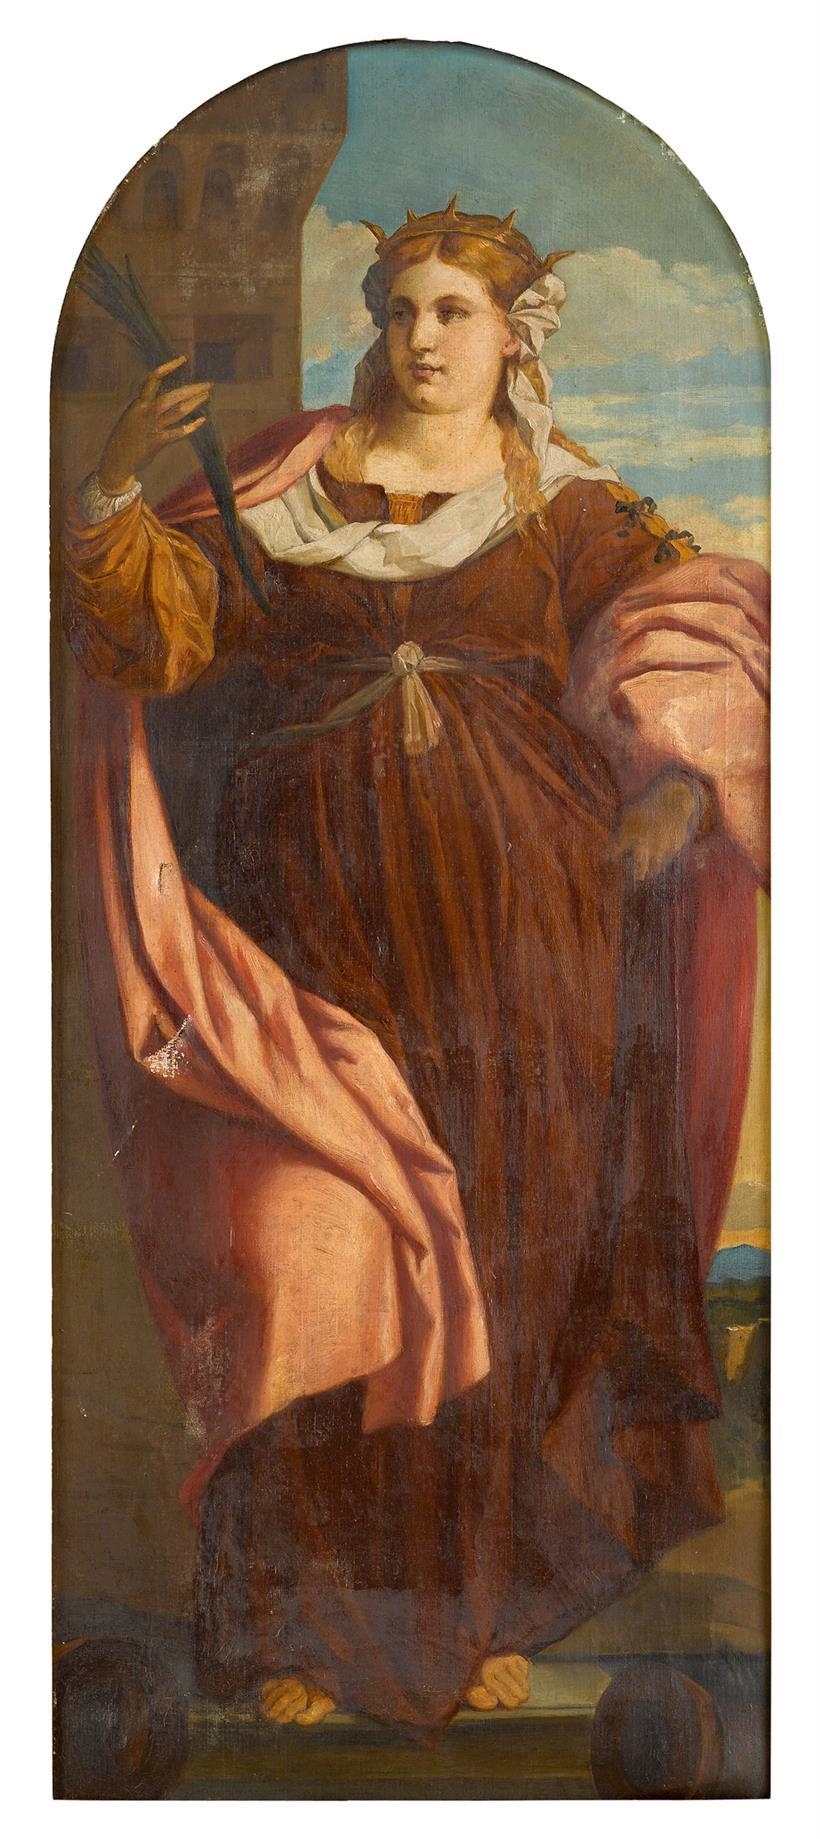 St. Barbara by Jacopo Palma il Vecchio